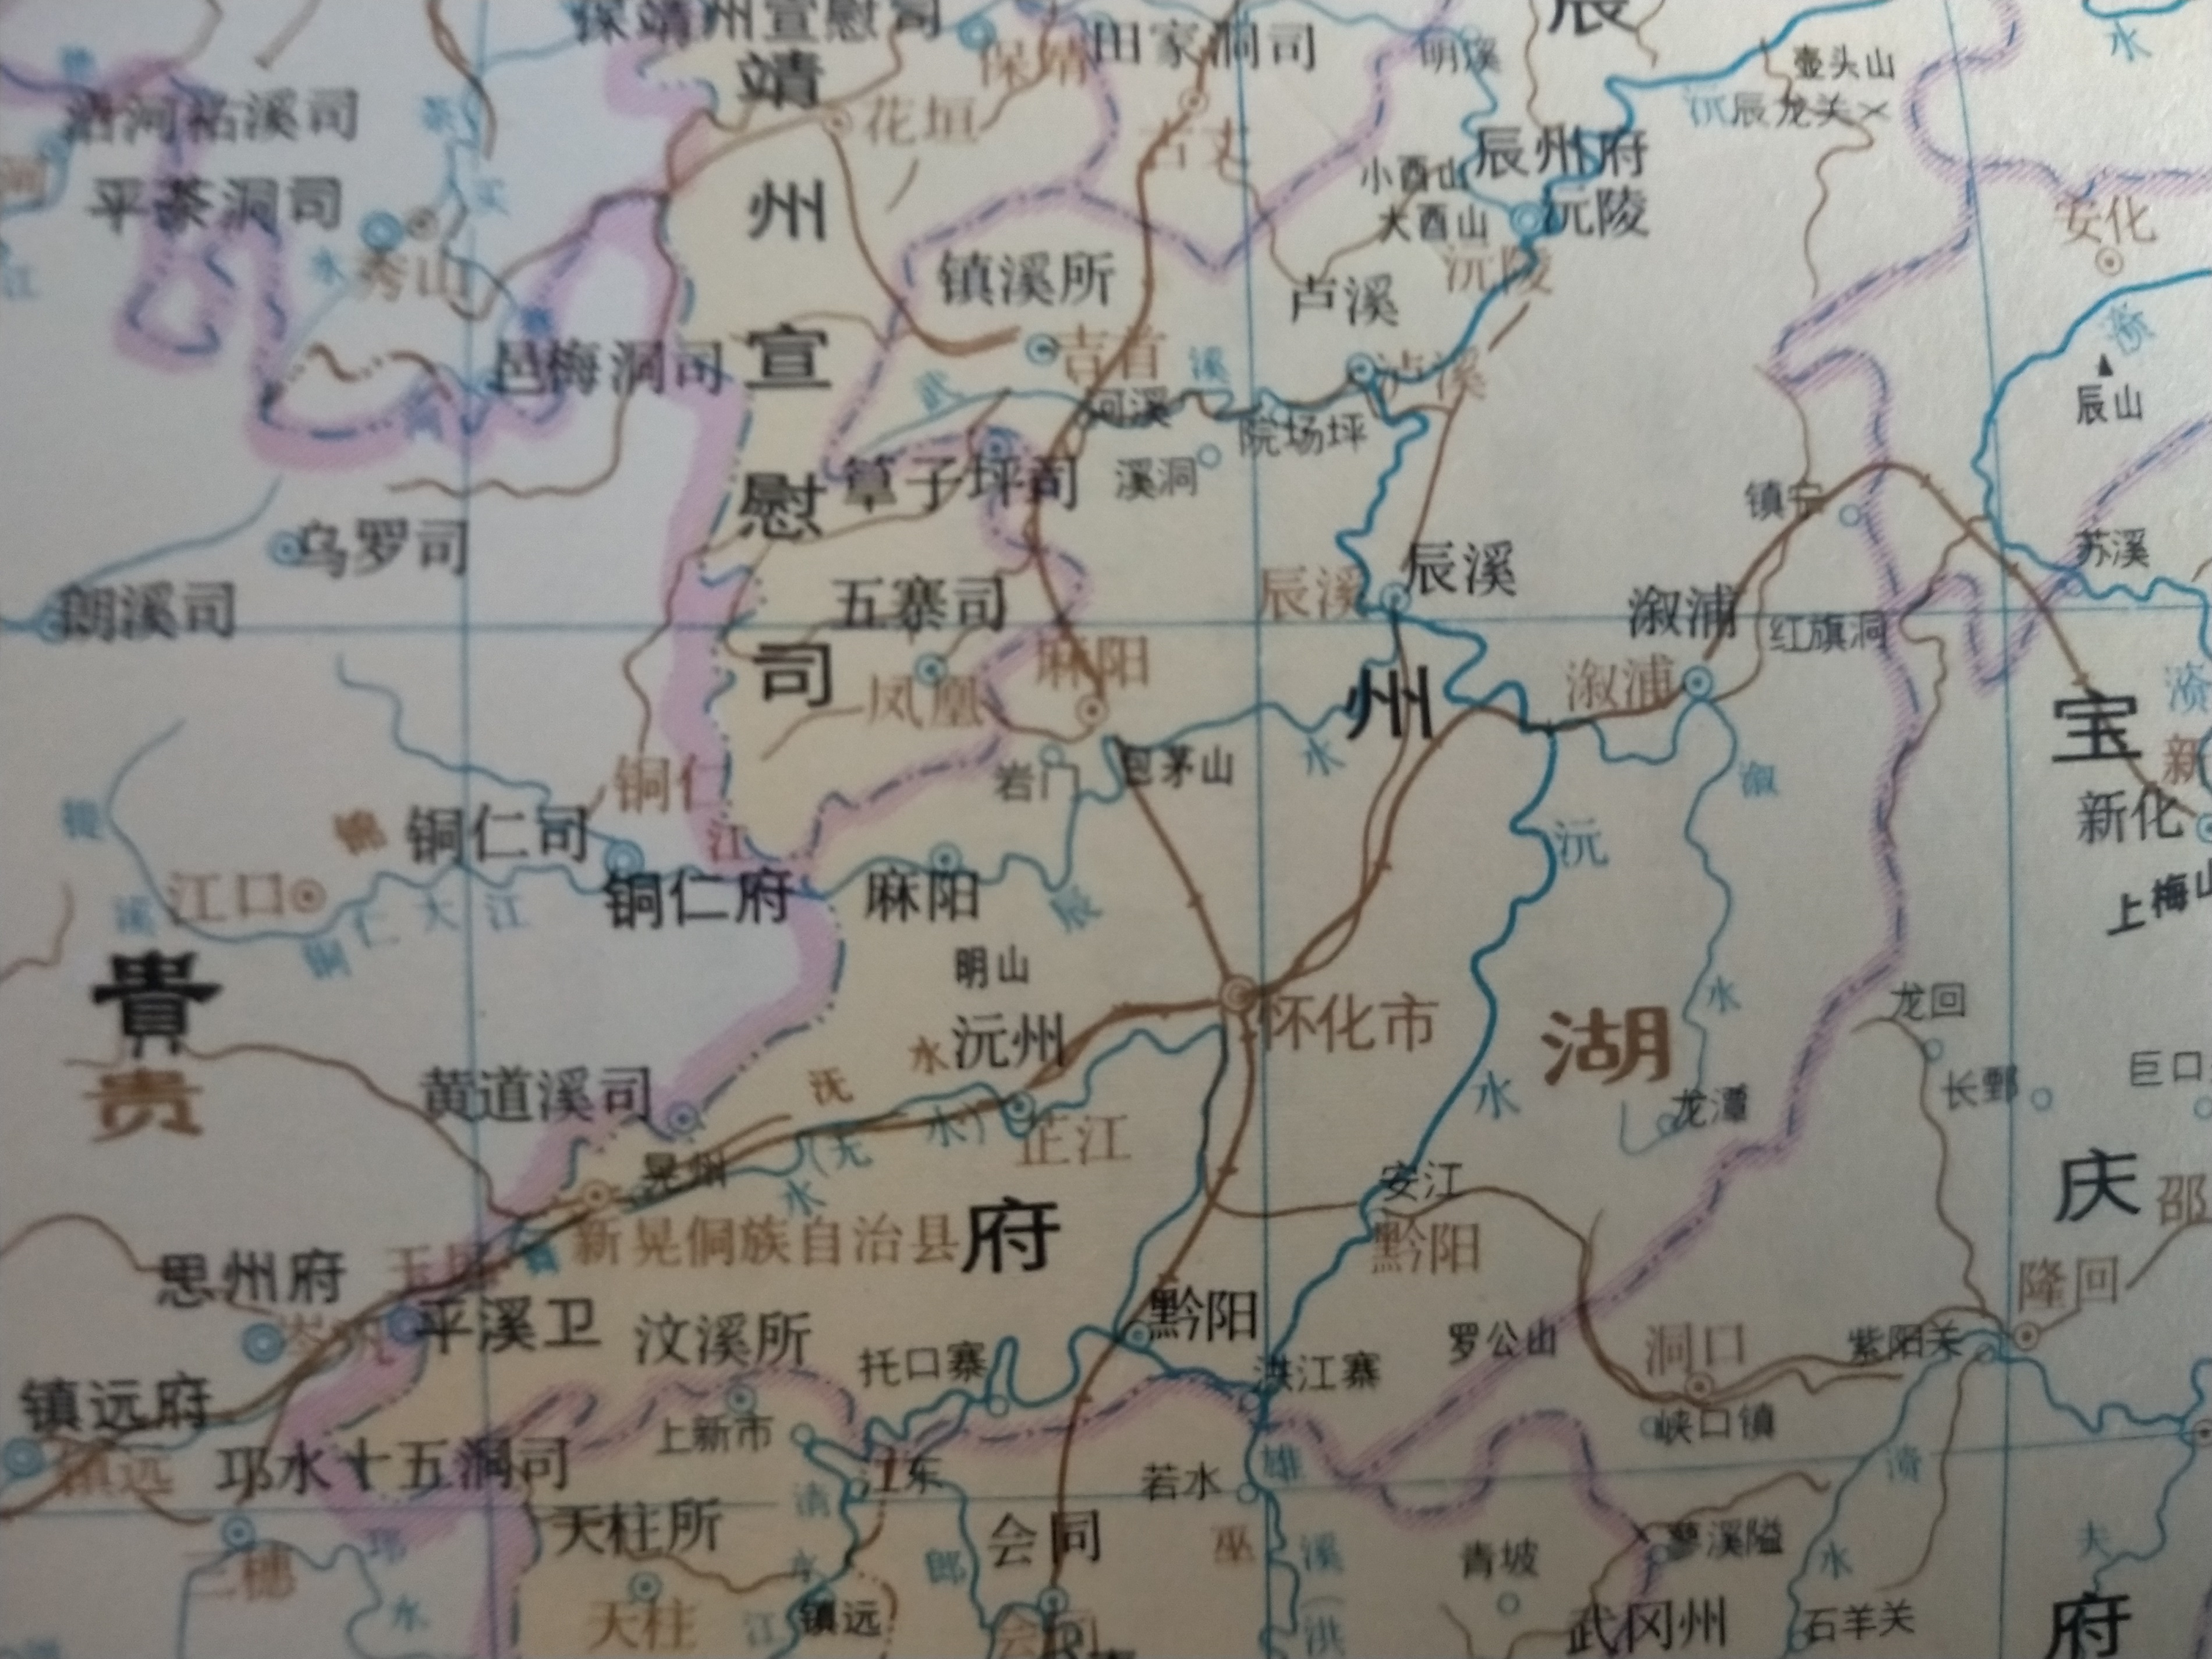 古地名演变:湖南怀化古代地名及区划演变过程